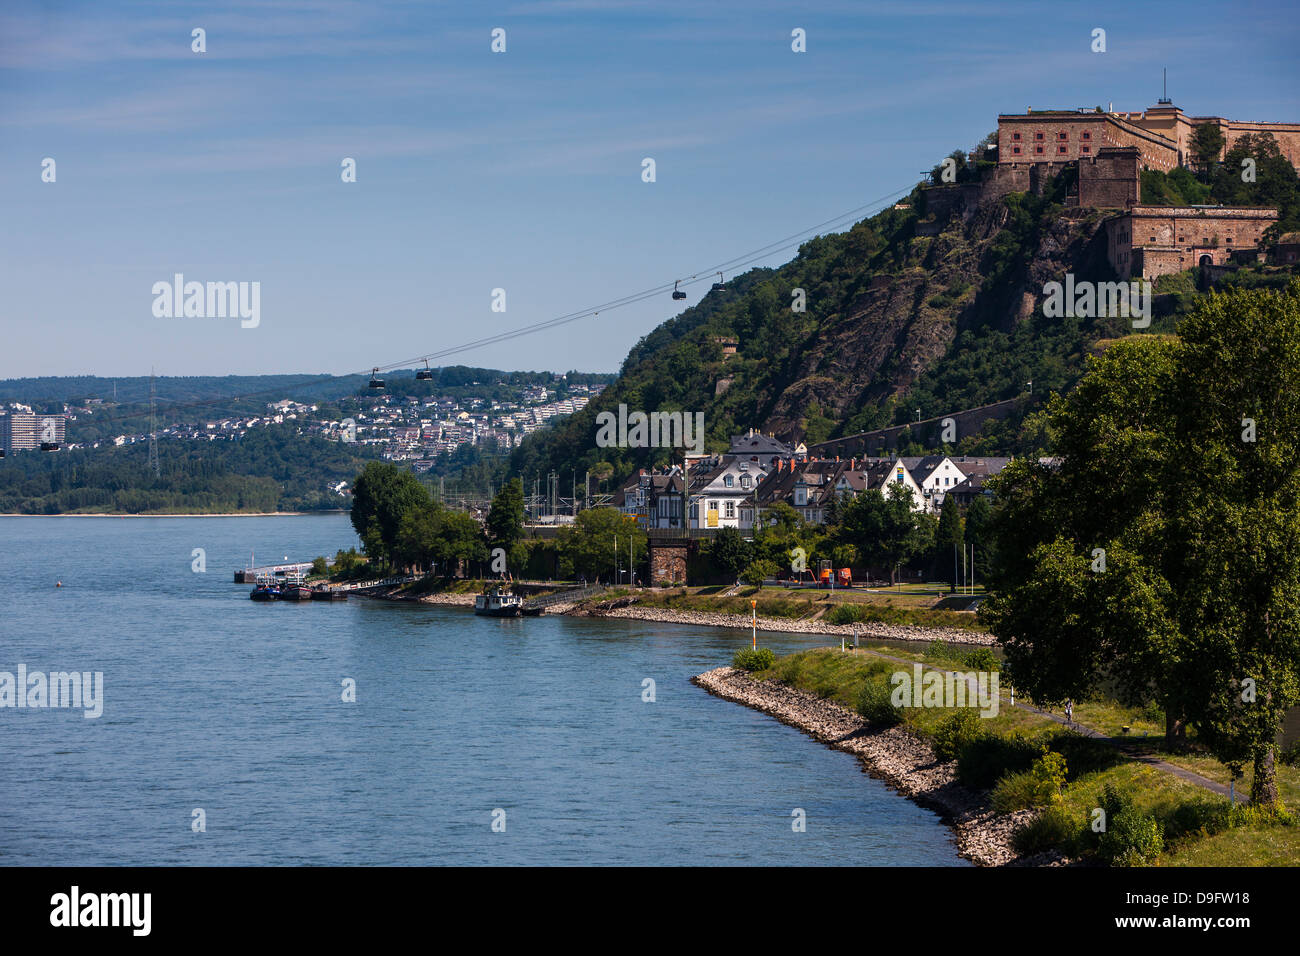 Festung Koblenz, Rheintal, Koblenz, Rheinland-Pfalz, Deutschland Stockfoto